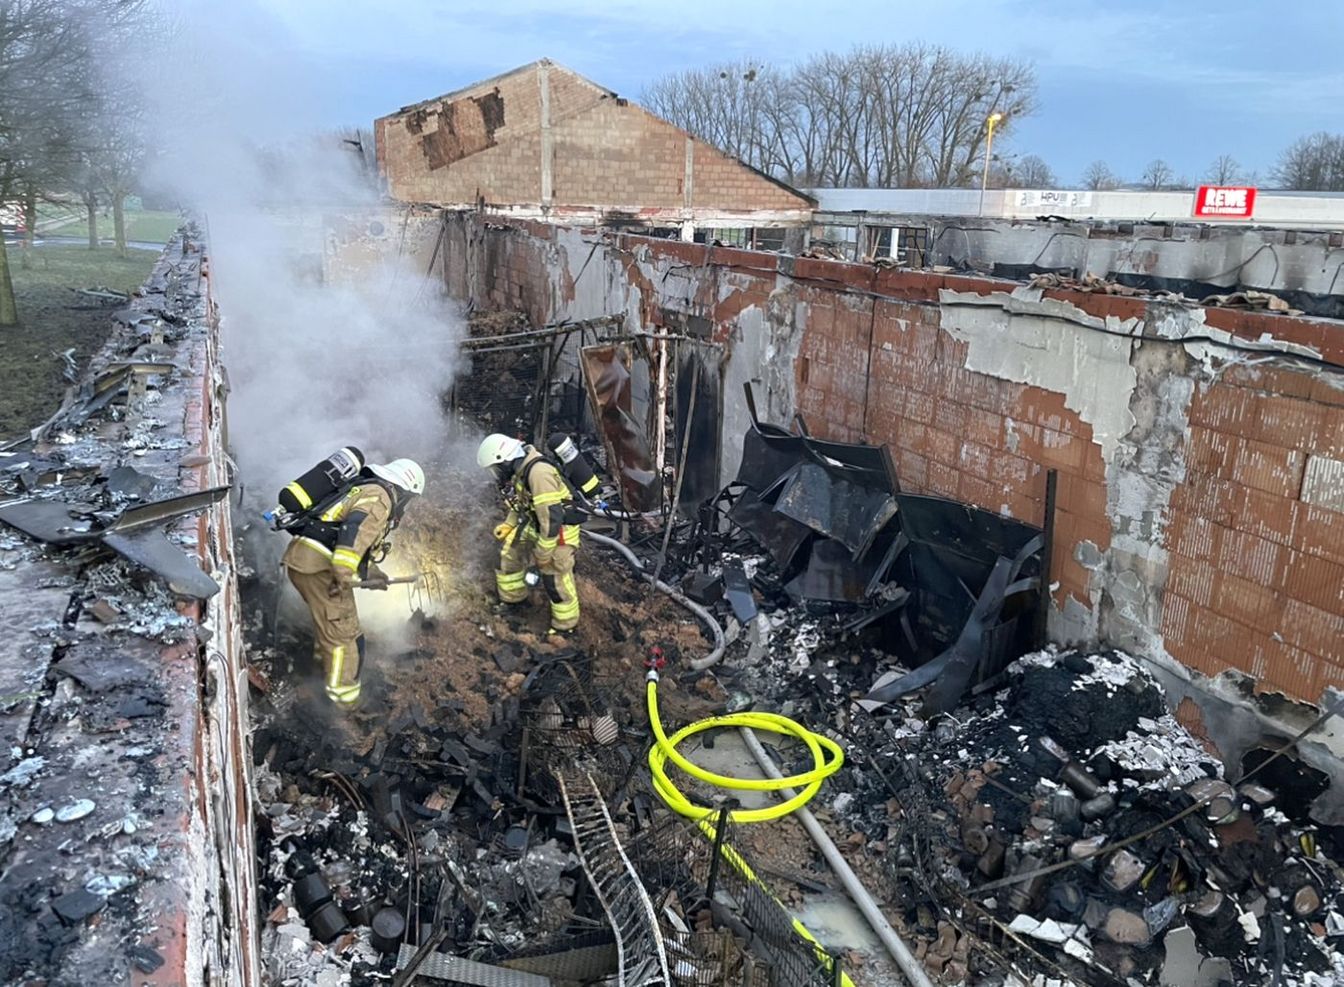 Update: Großbrand zerstört Baumarkt – Feuerwehr wird zwei Mal zum Nachlöschen alarmiert